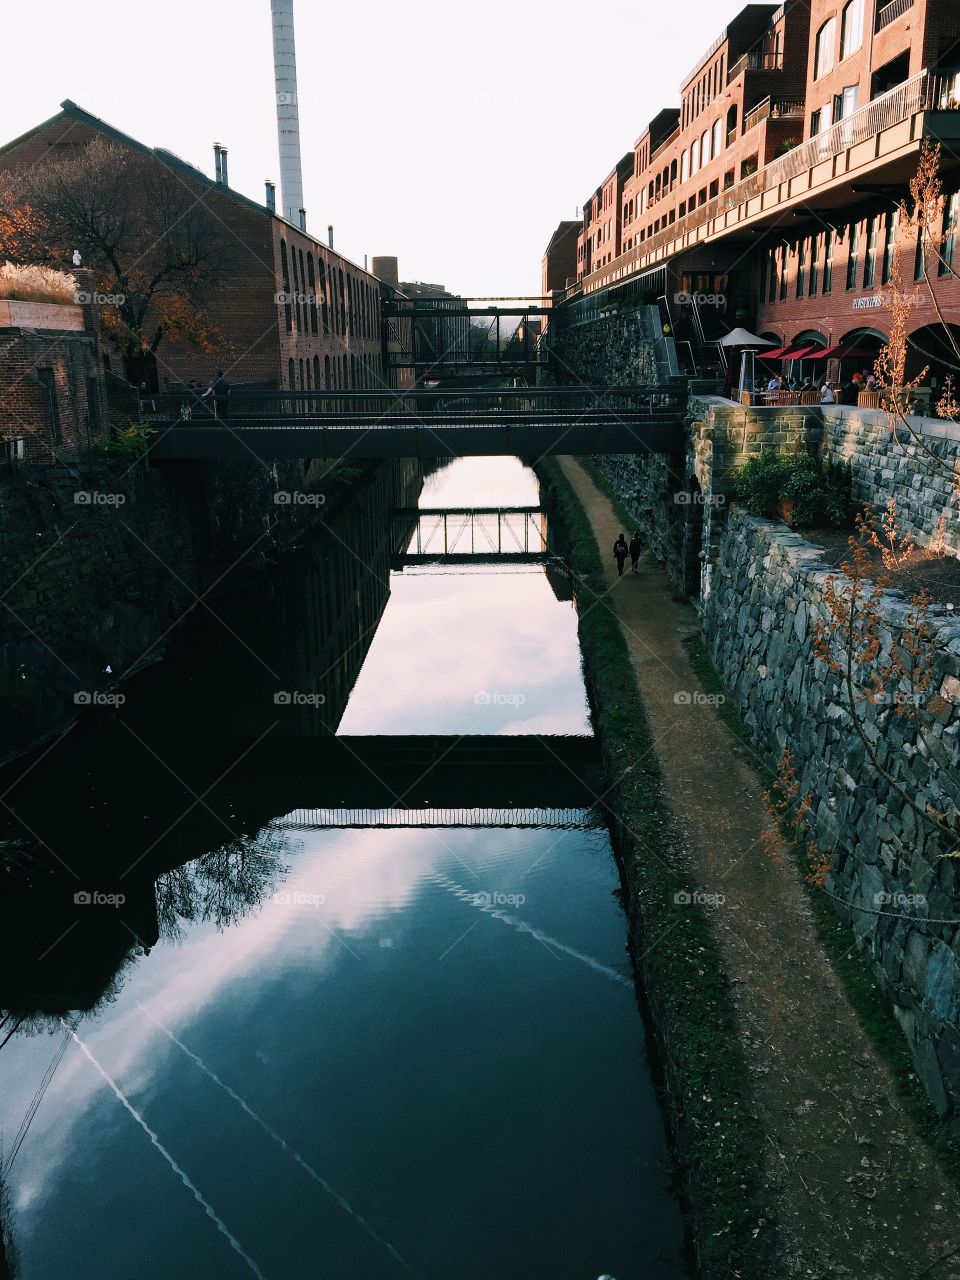 Georgetown waterway